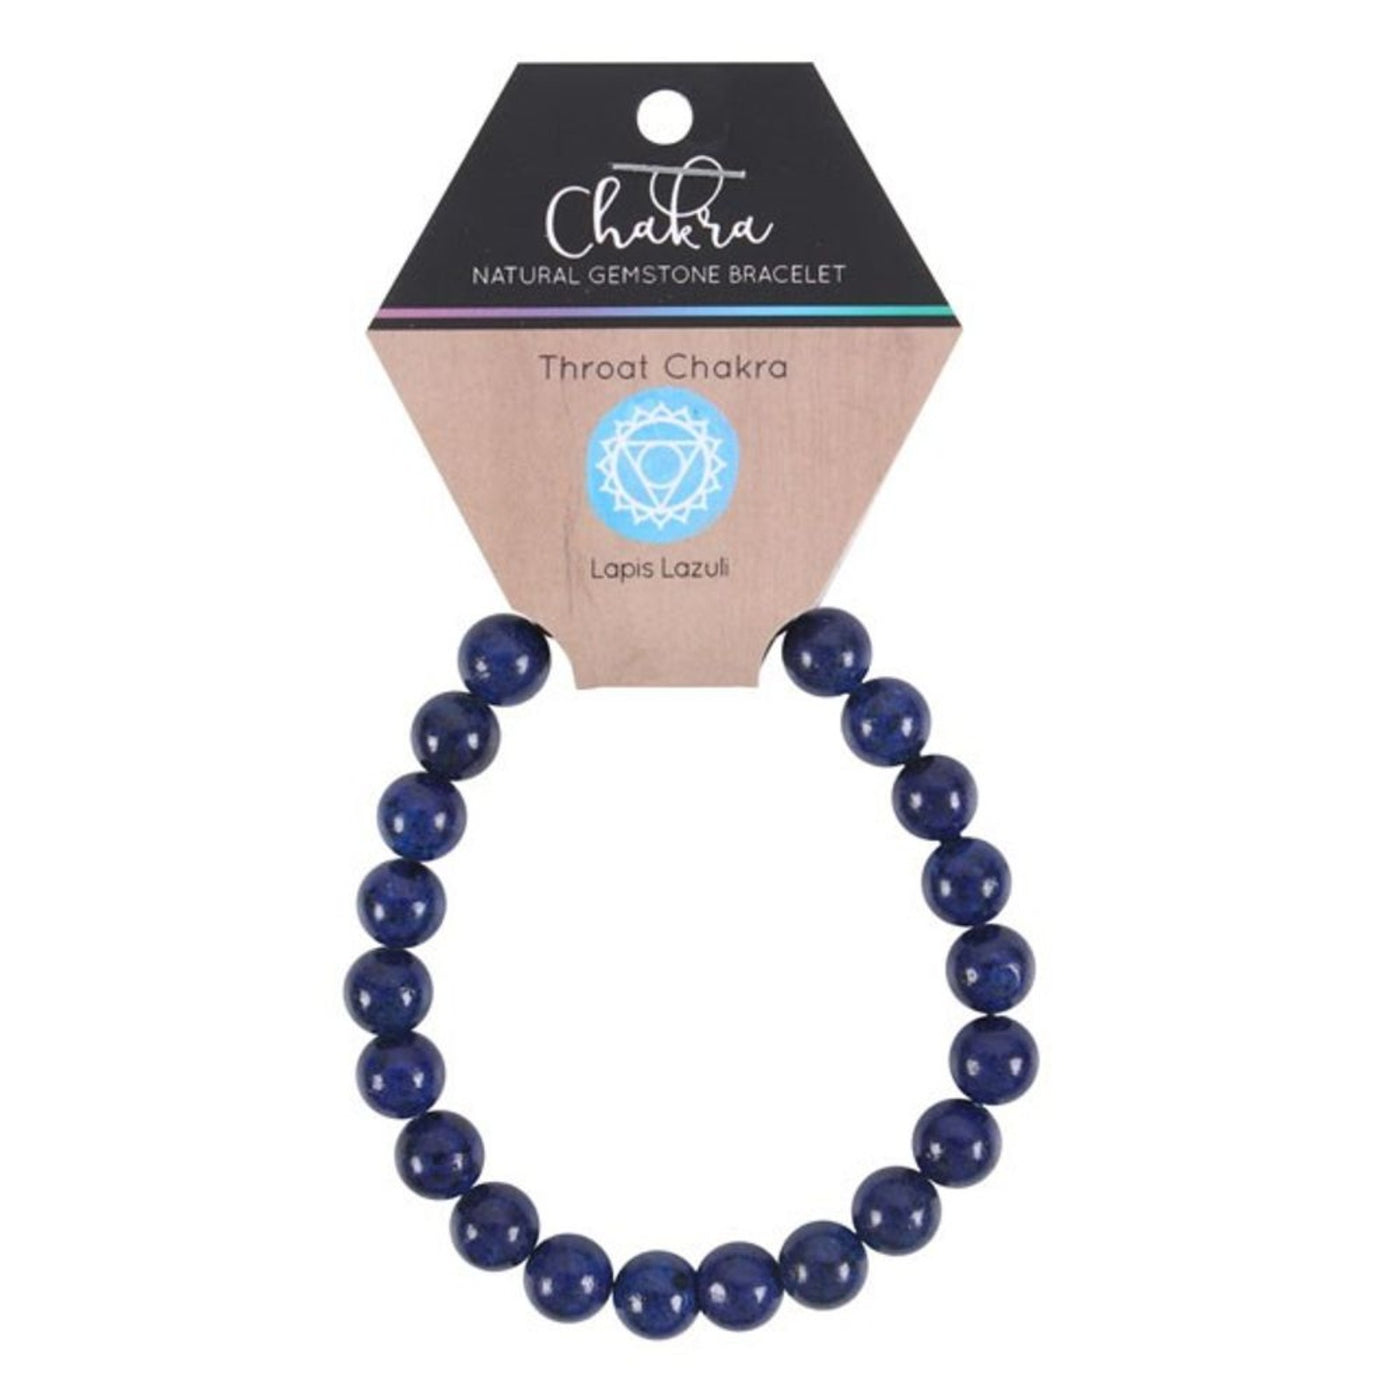 Unisex Throat Chakra Blue Lapis Lazuli Gemstone Bracelet.